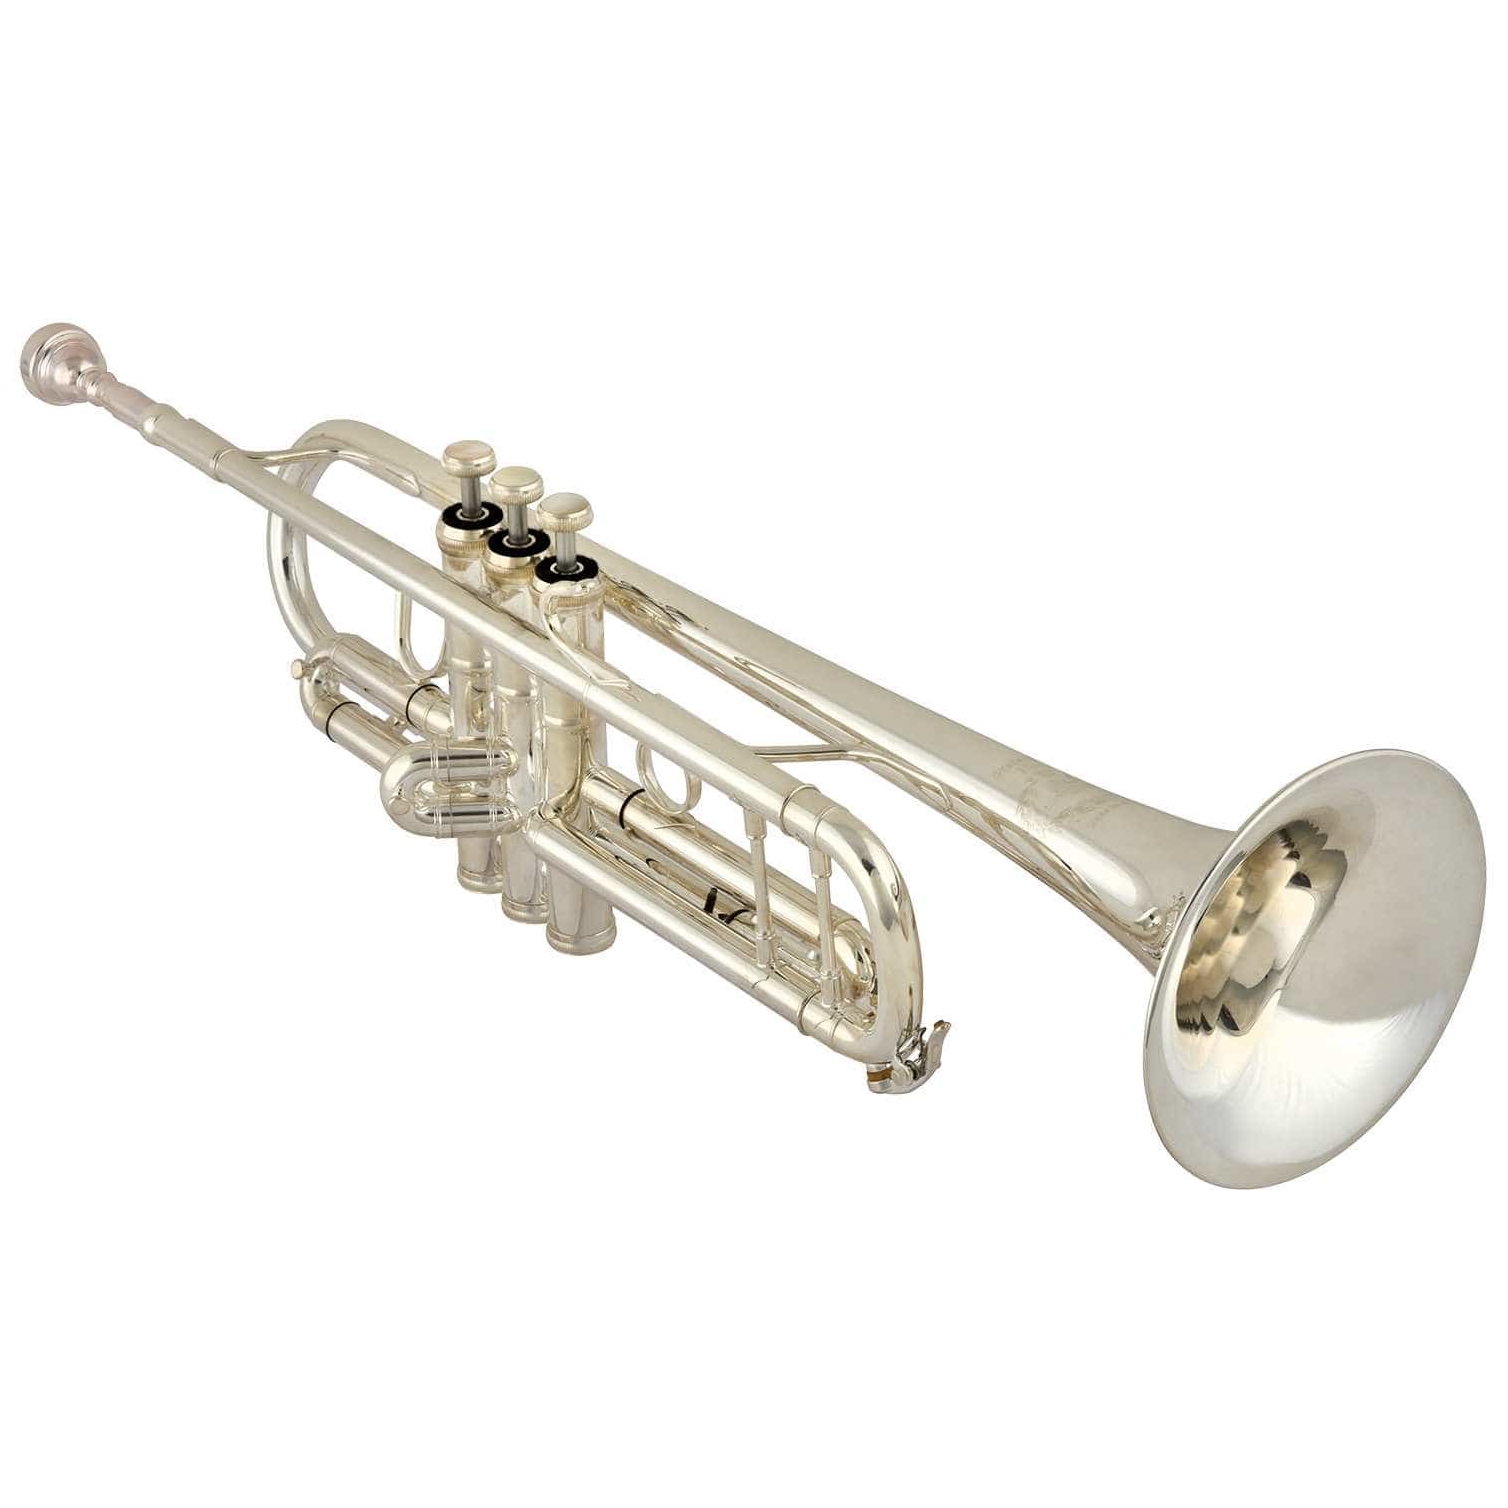 B&S 3137-L Challenger I Trompete kaufen | Jetzt bei session!